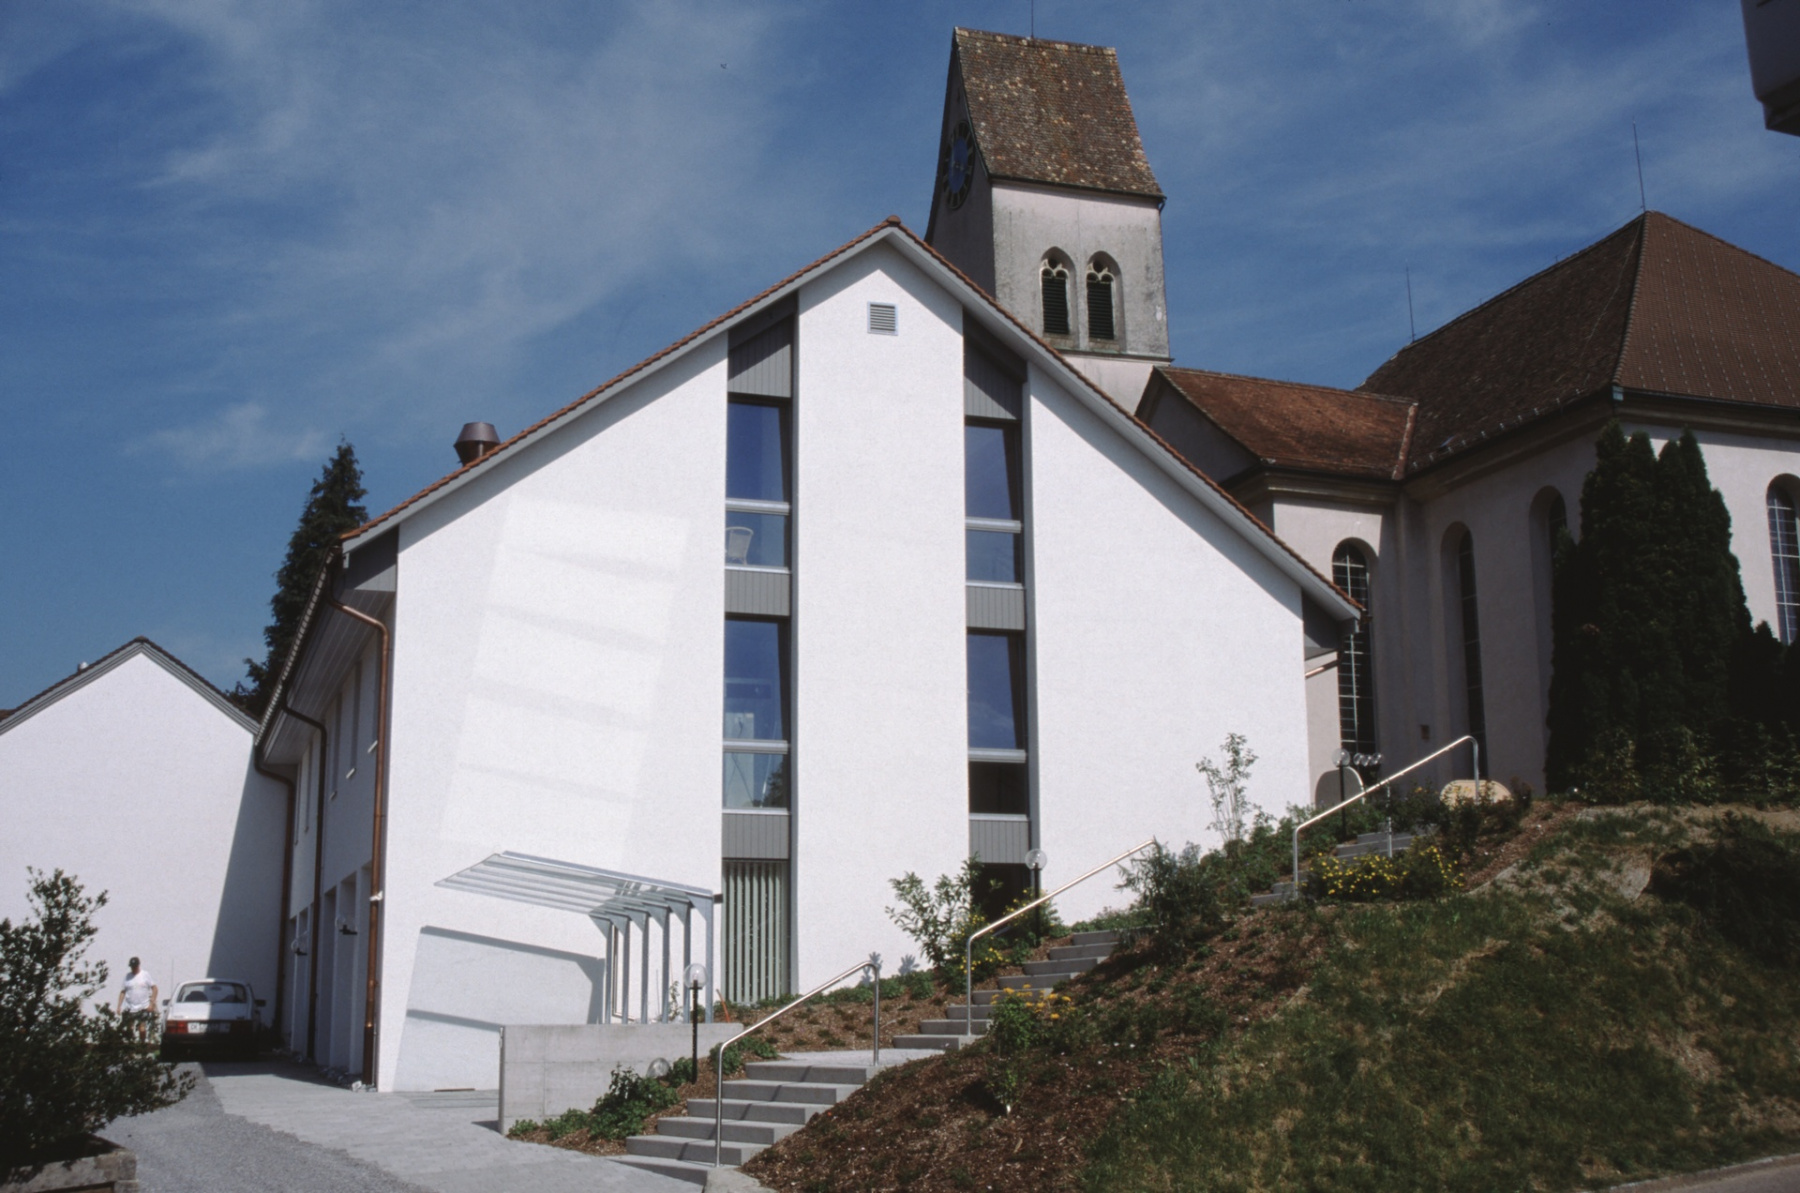 Kirchgemeindehaus, von Liegenschaft Wälty aus